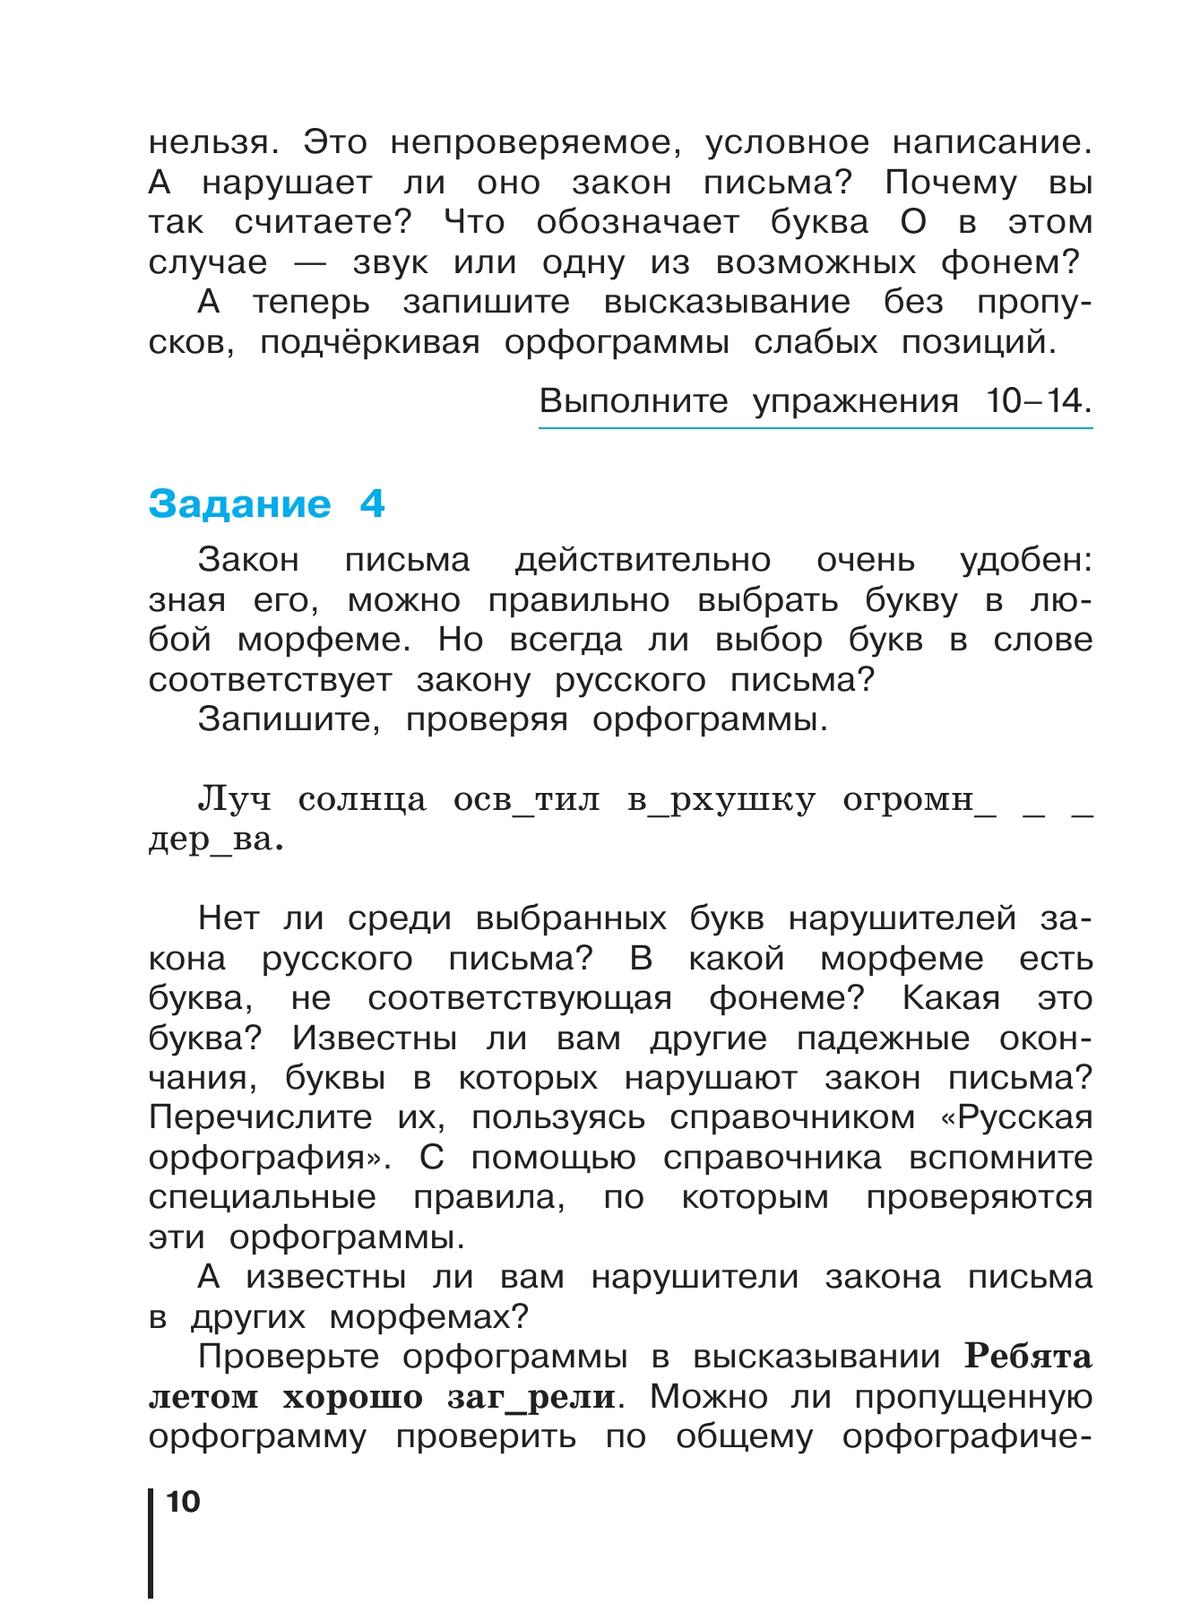 Русский язык. 4 класс. Учебник. В 2 ч. Часть 1 8